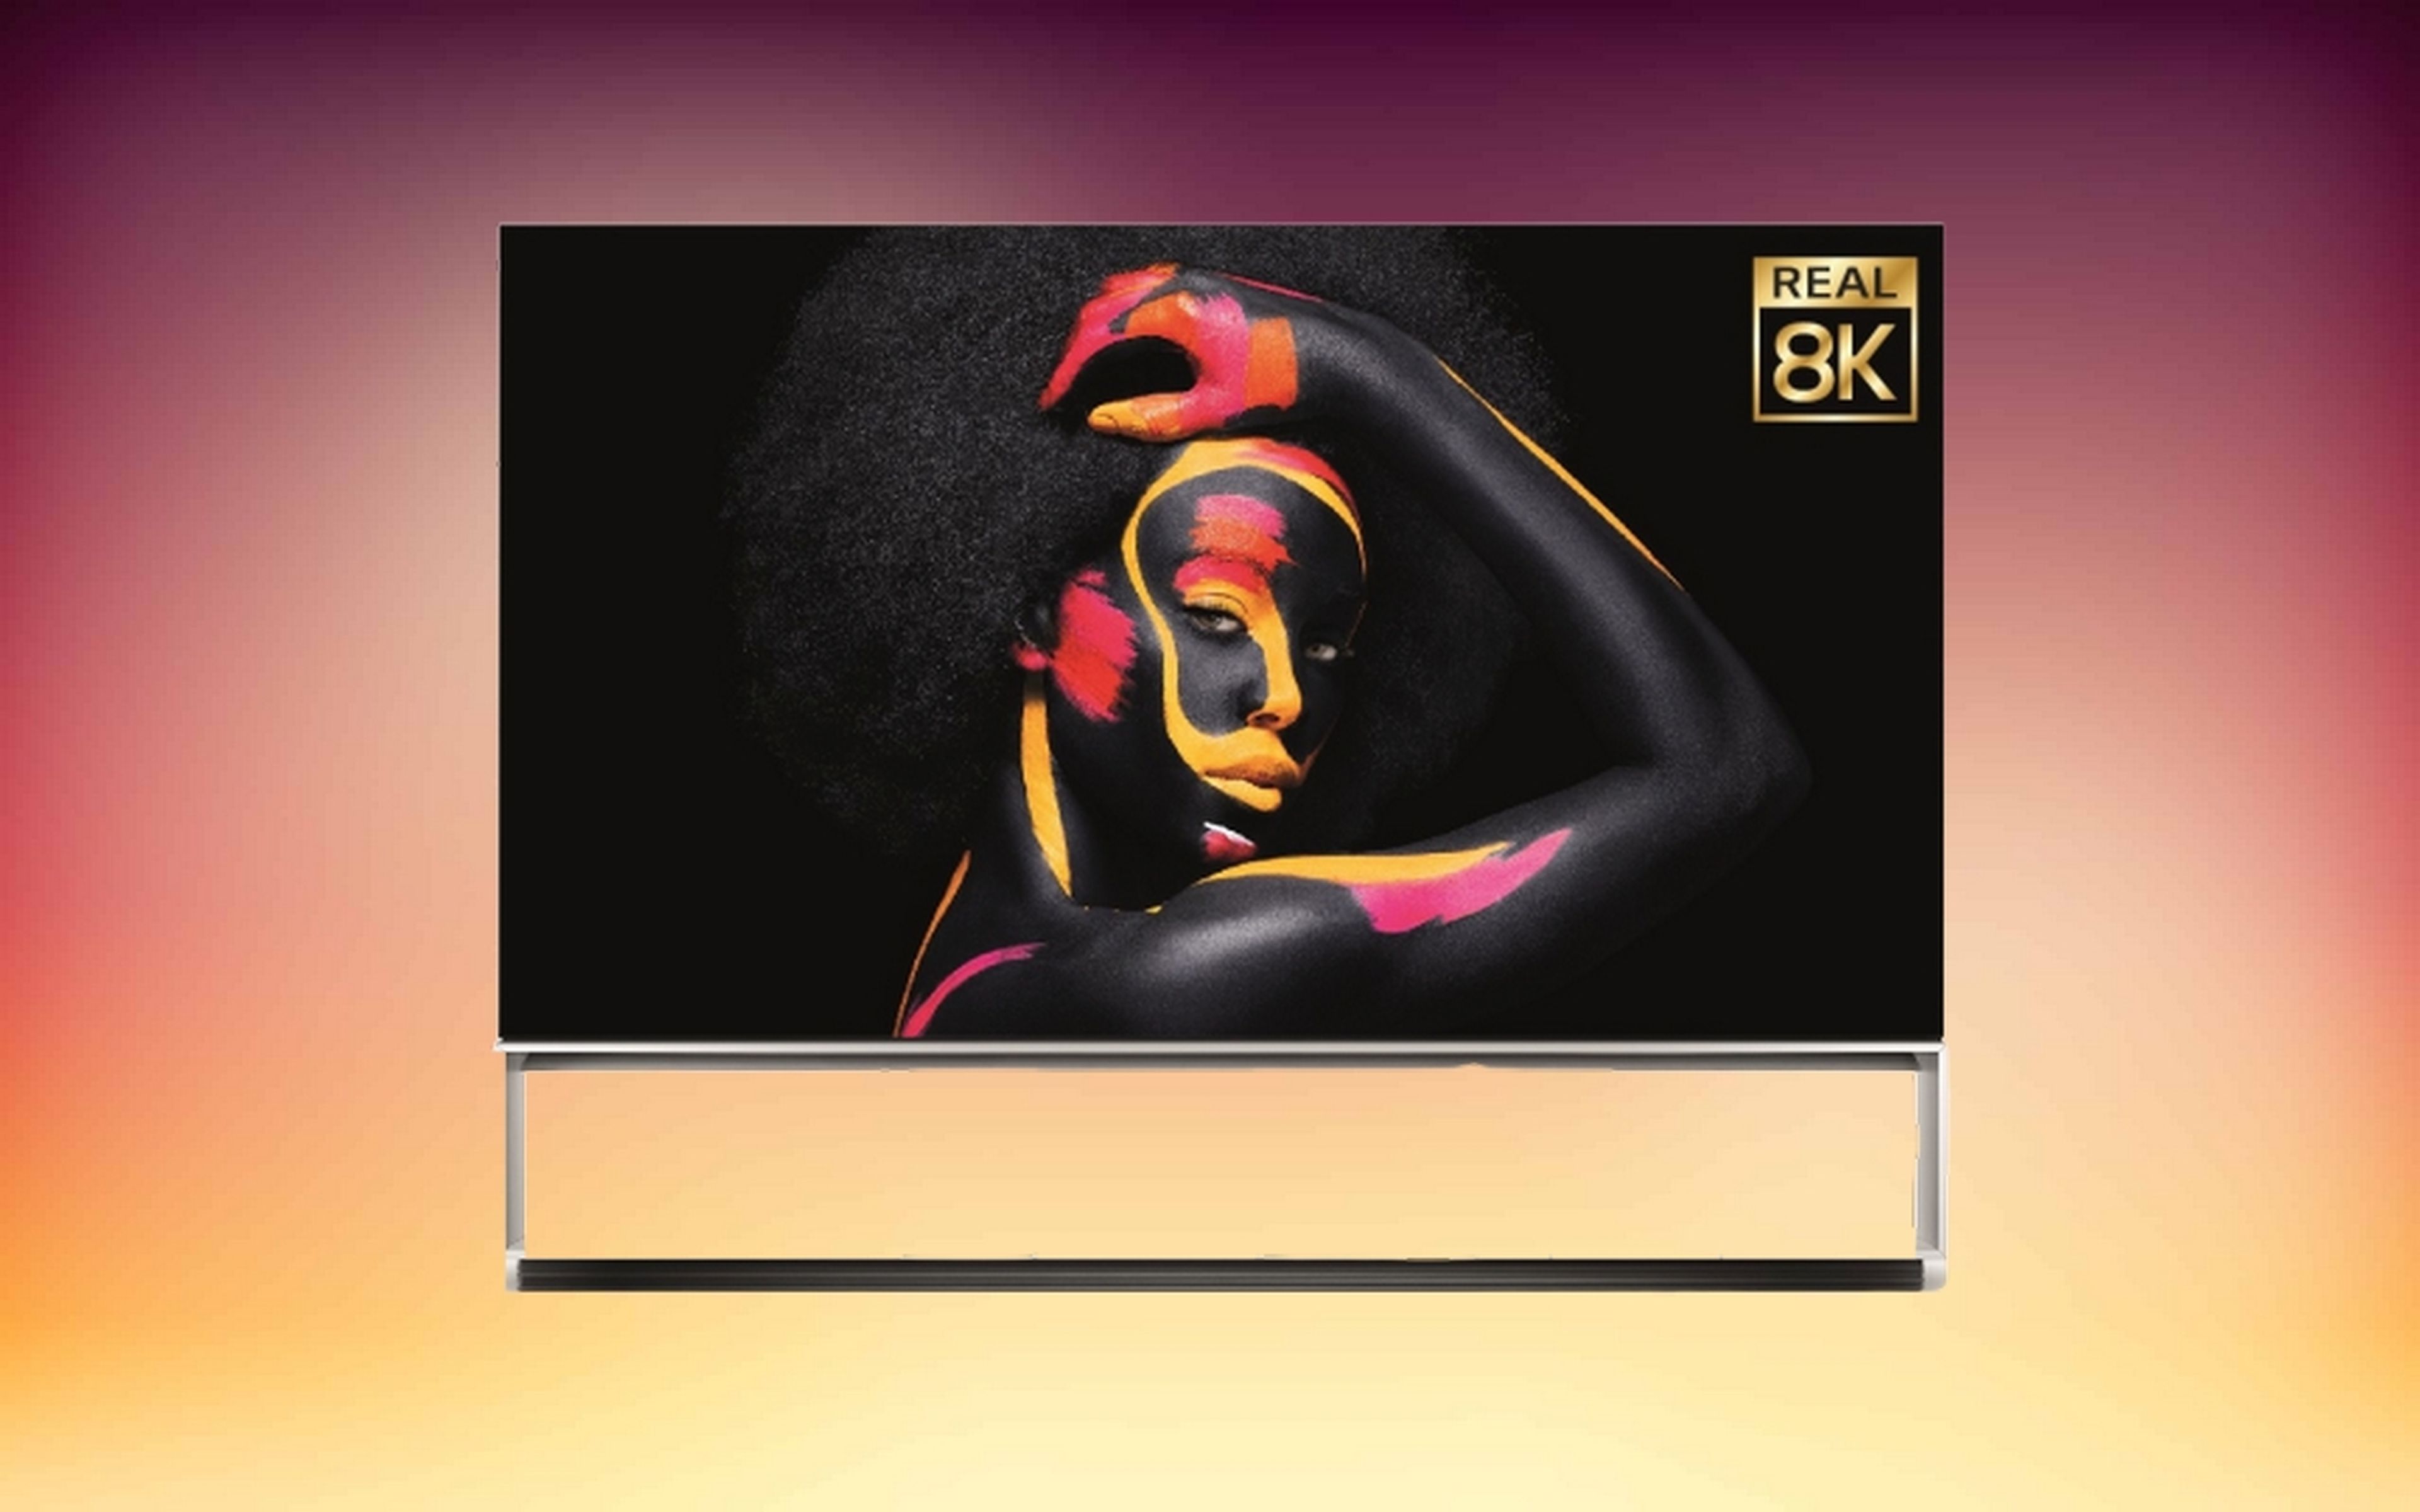 LG presenta ocho televisores 8K OLED Real con mejora de la imagen y el sonido usando inteligencia artificial